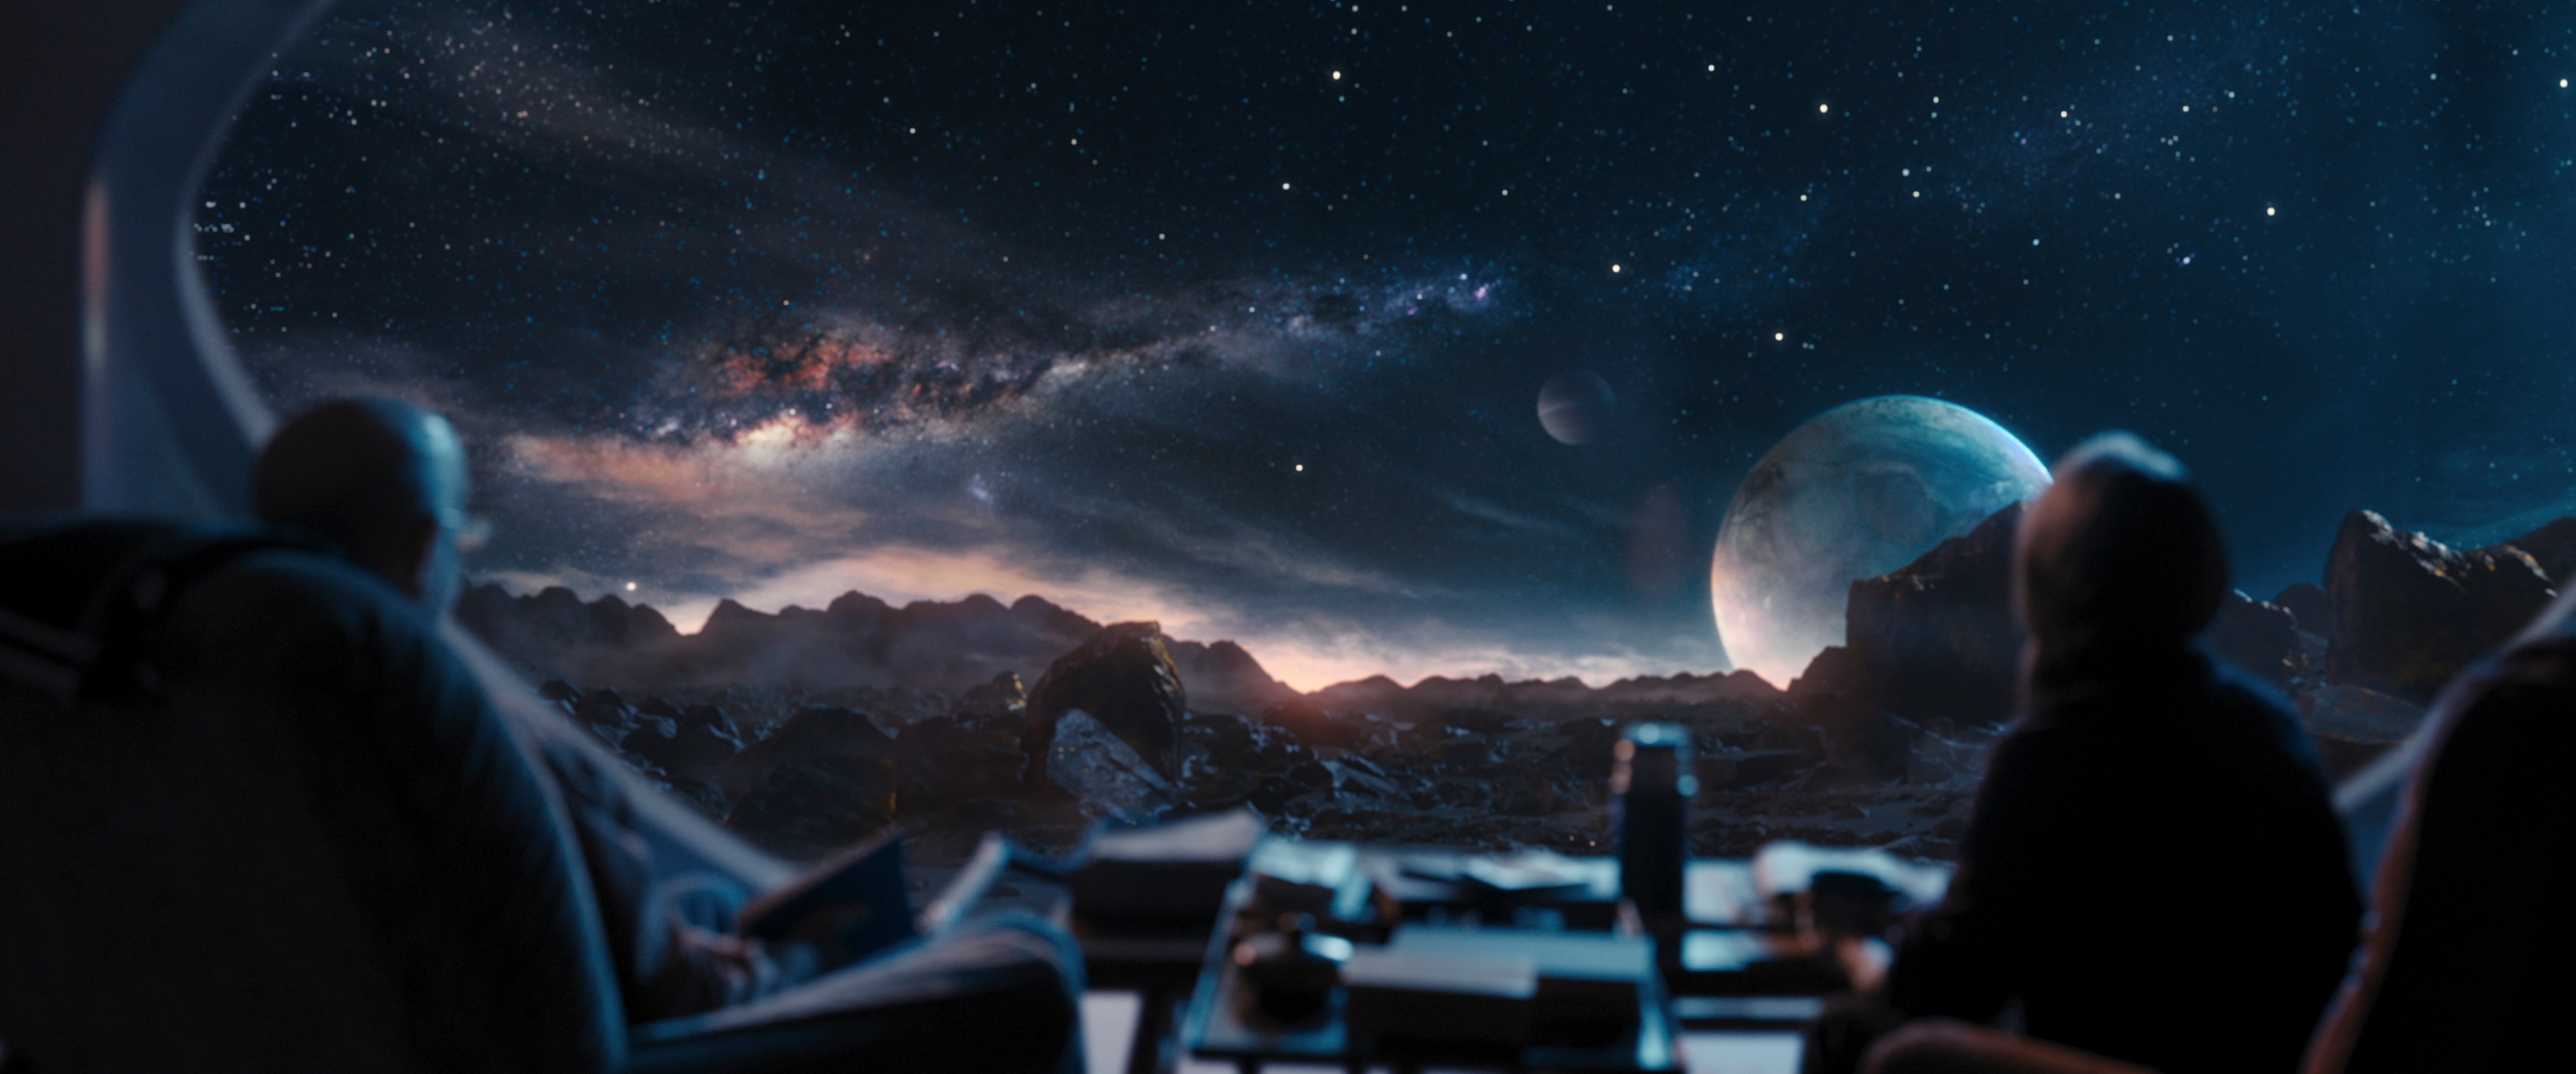 J.K. Simmons and Sissy Spacek make space travel look easy in Prime Video’s Night Sky